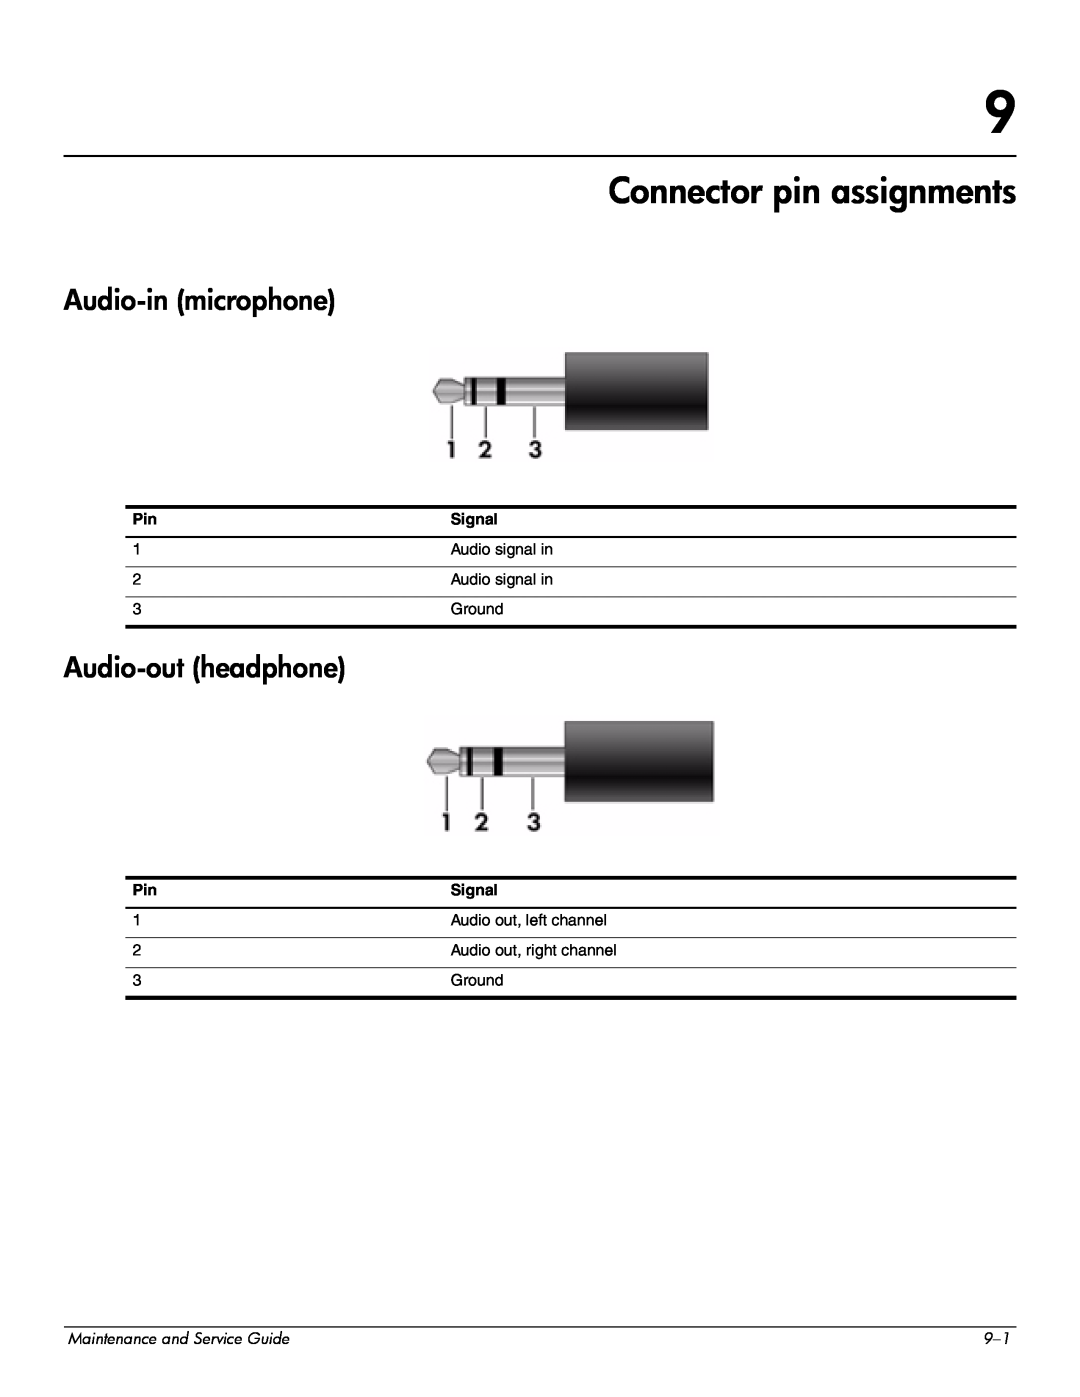 HP CQ41-215AU, CQ41-206AU, CQ41-205AX, CQ41-204AU manual Connector pin assignments, Audio-in microphone, Audio-out headphone 